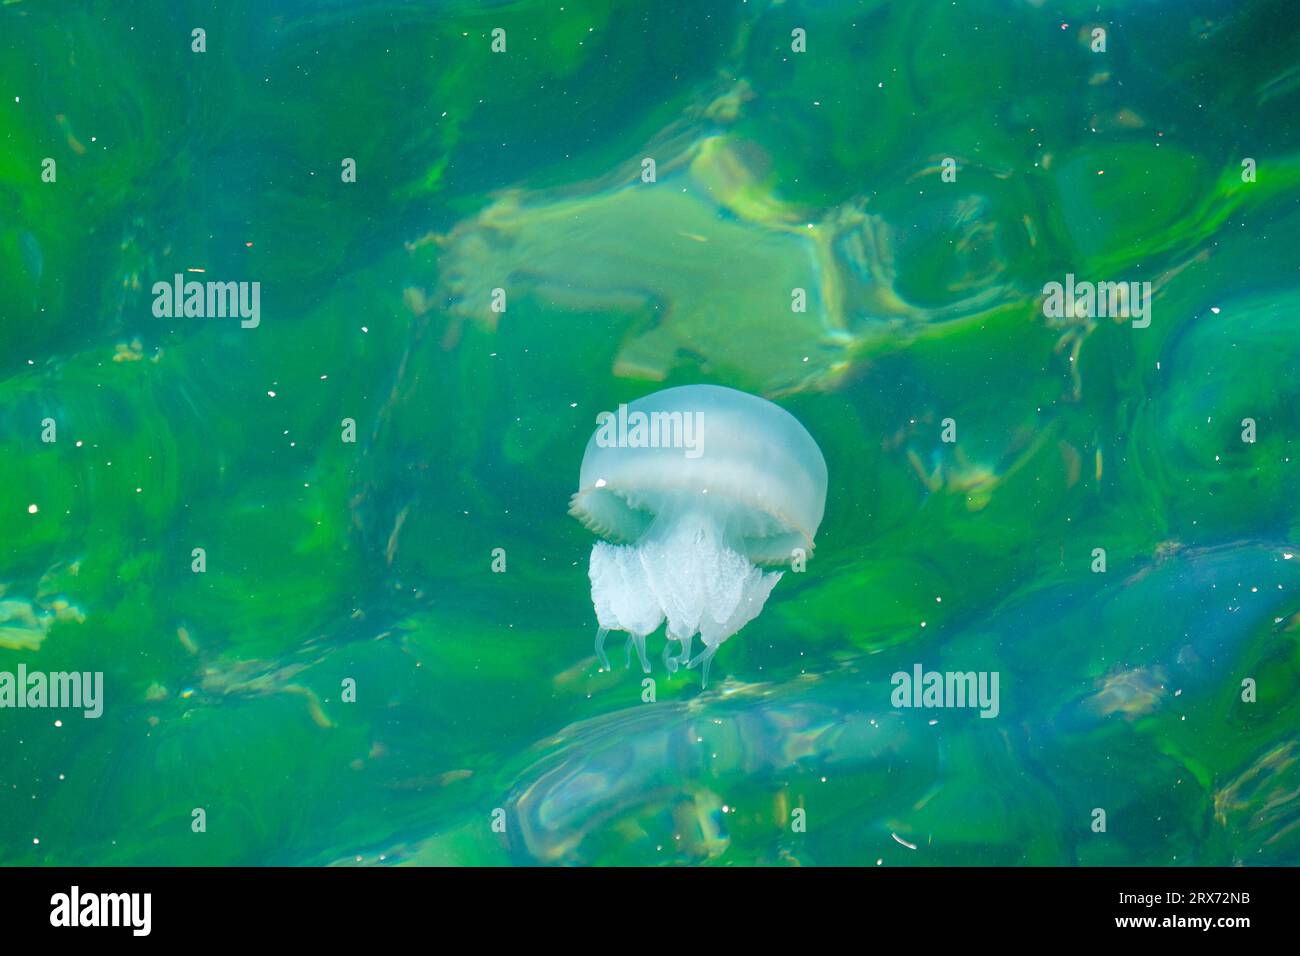 Schließen Sie giftige Gelee-Fisch-Medusae im blauen grünen Meerwasser. Quallen-Meerestier-Hintergrundtapete. Stockfoto